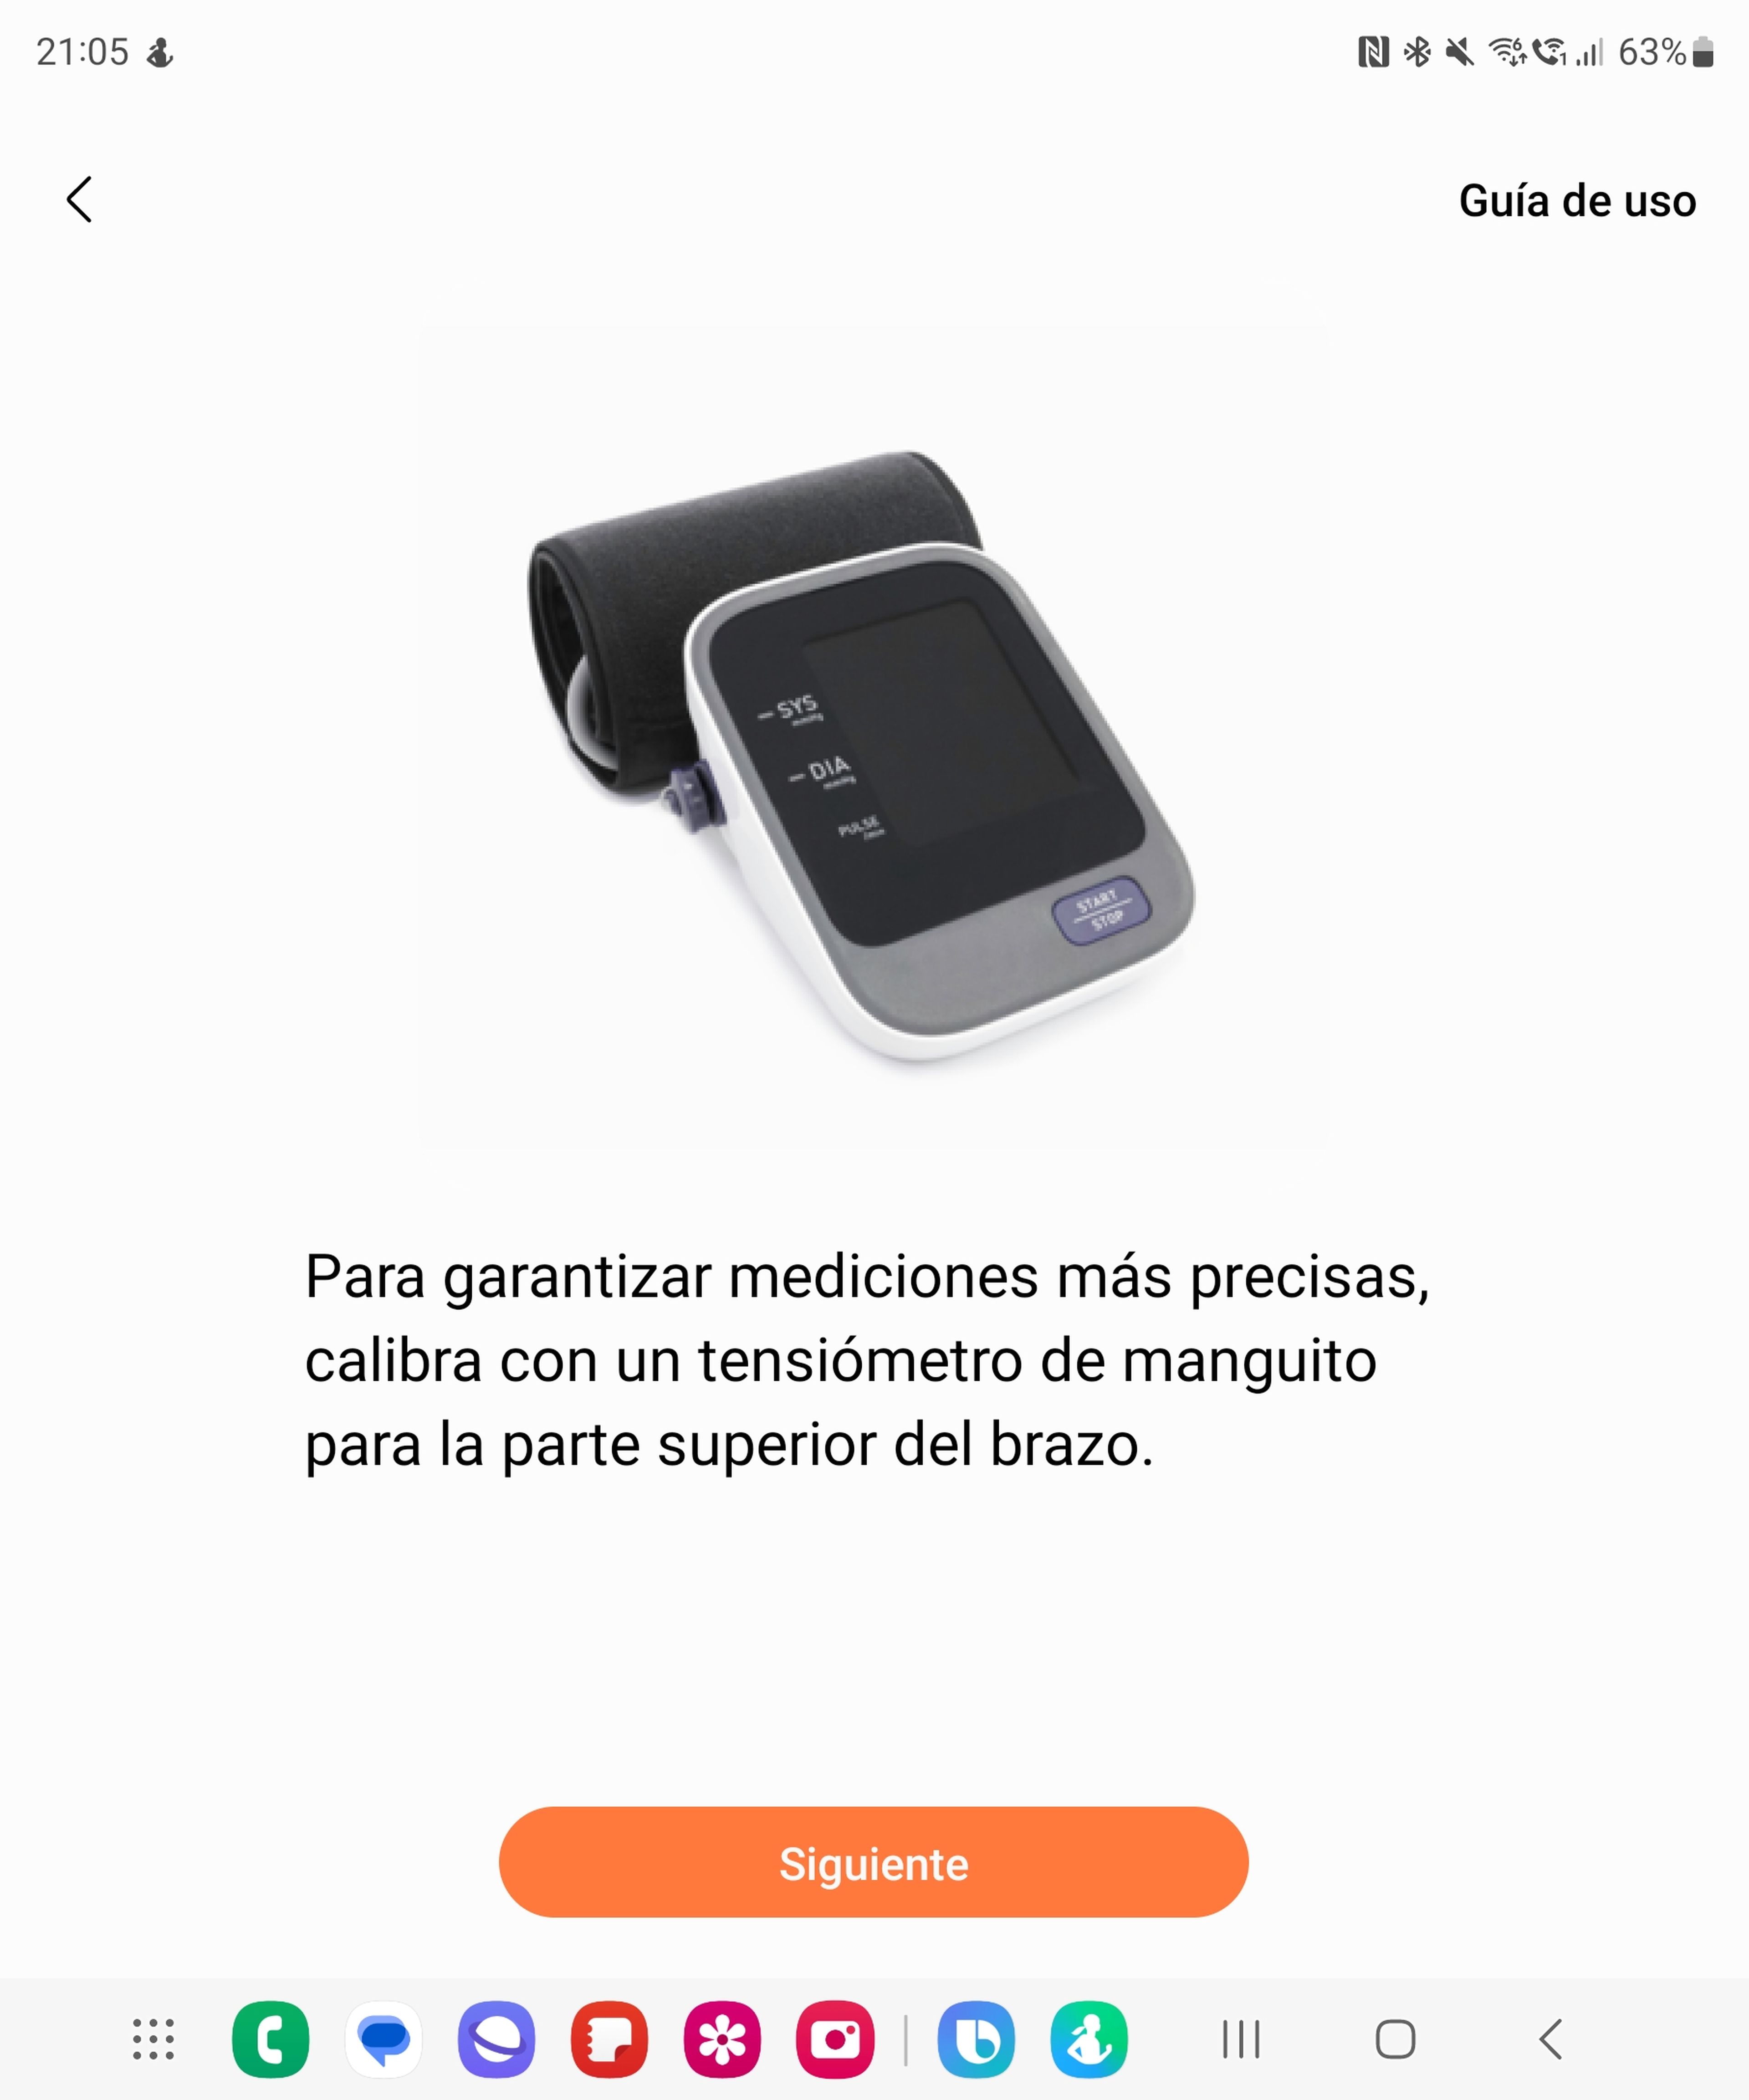 Samsung Health Monitor, calibración con tensiómetro